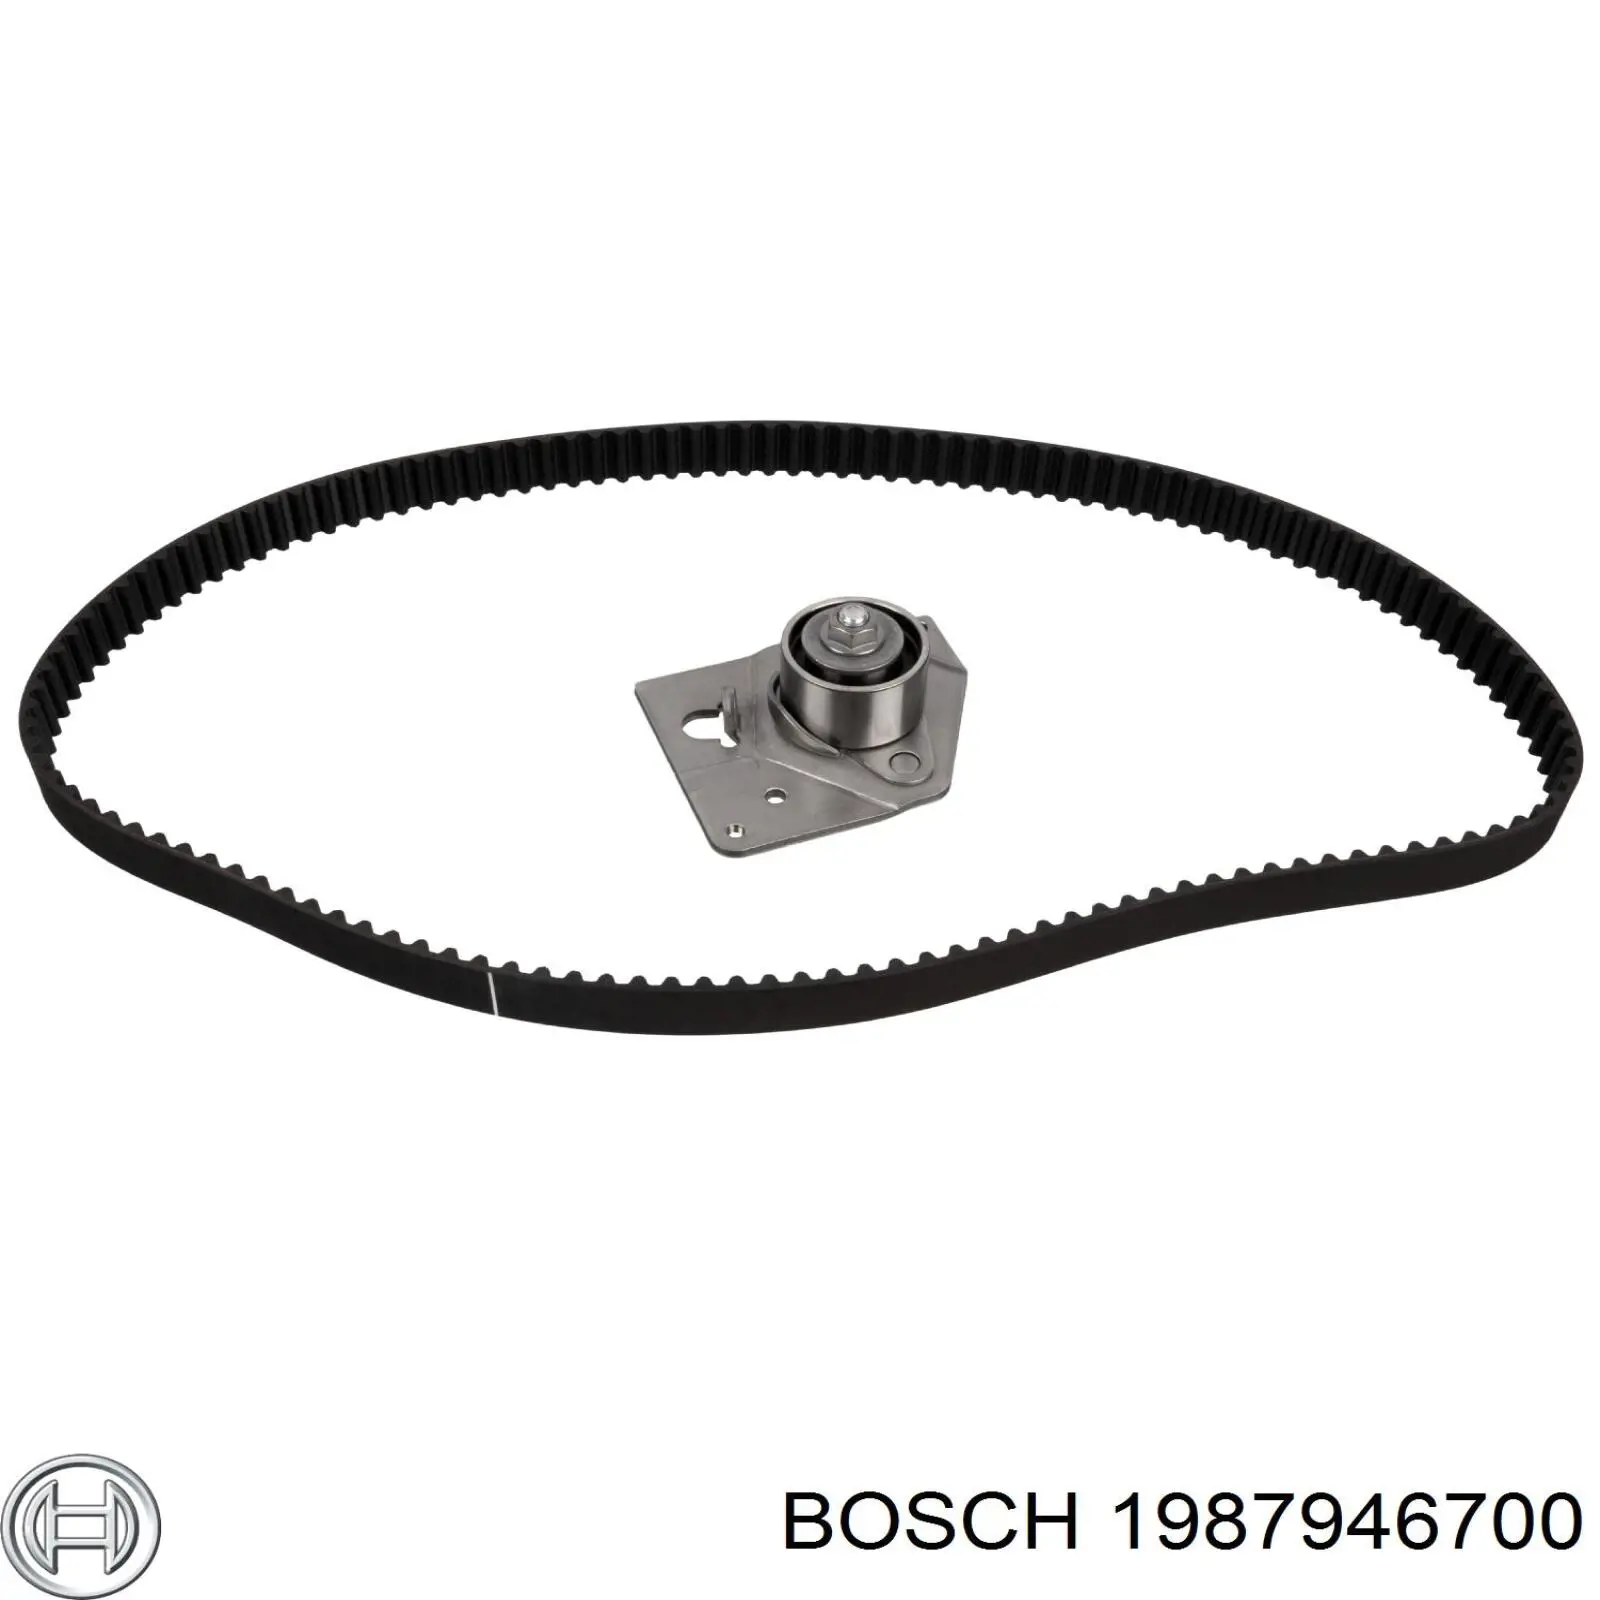 1987946700 Bosch ремень грм